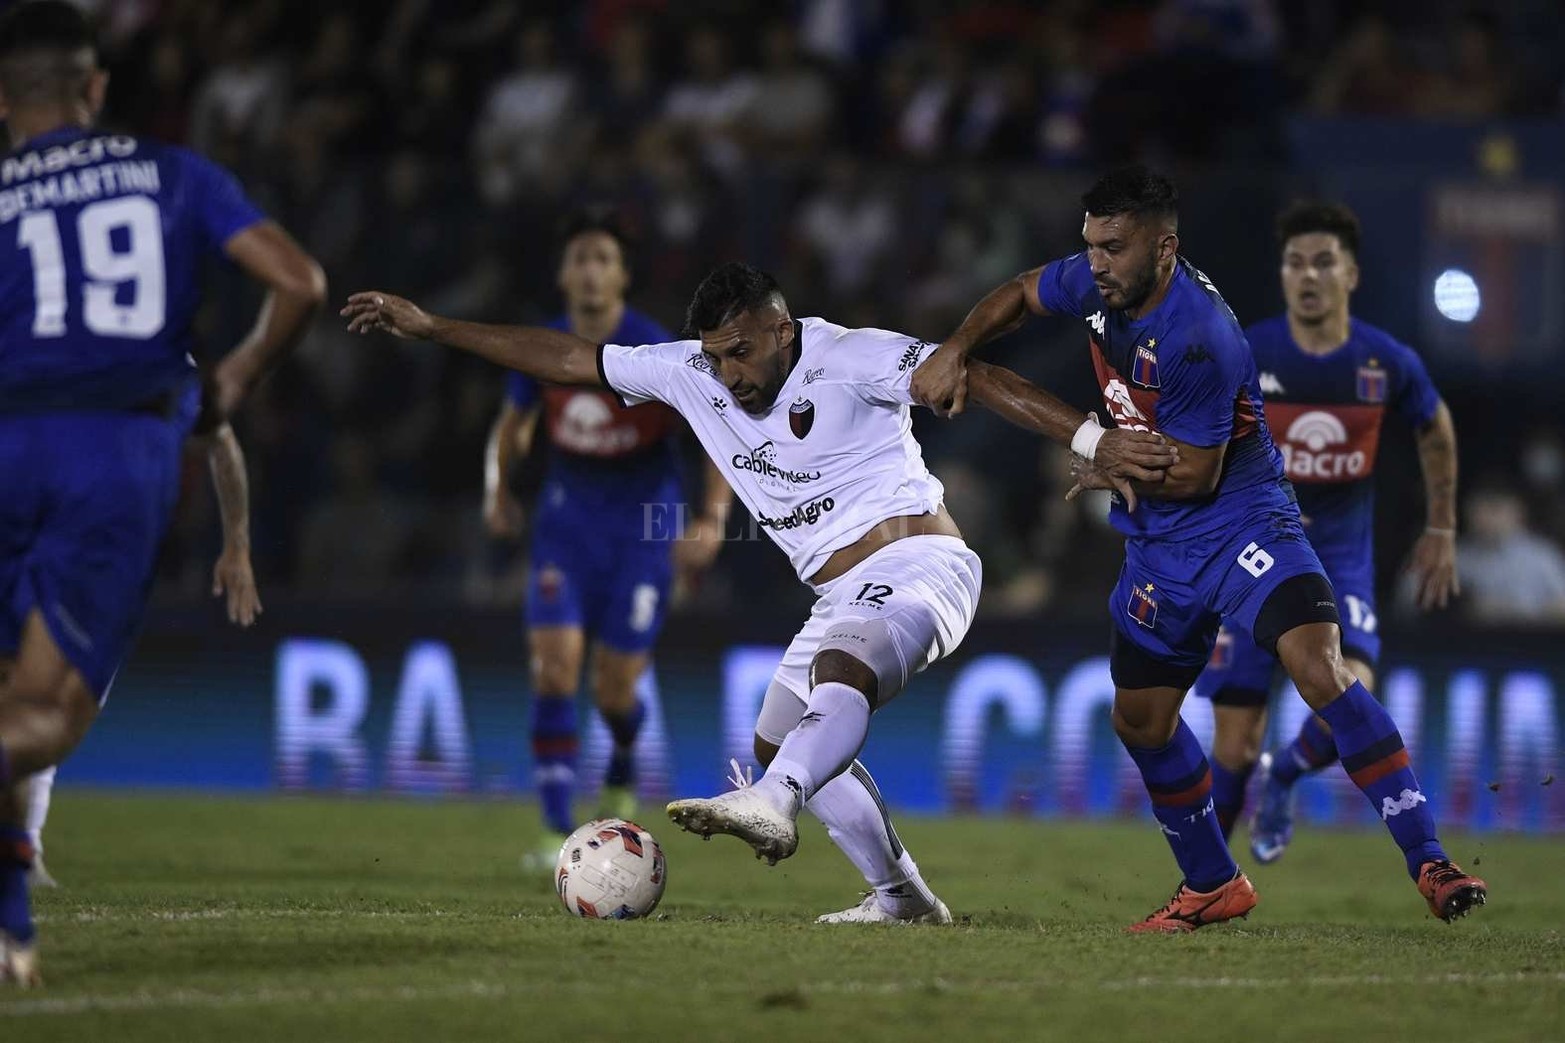 Tigre le ganó 1 a 0 a Colón en el cierre de la quinta fecha de la Liga Profesional de fútbol.